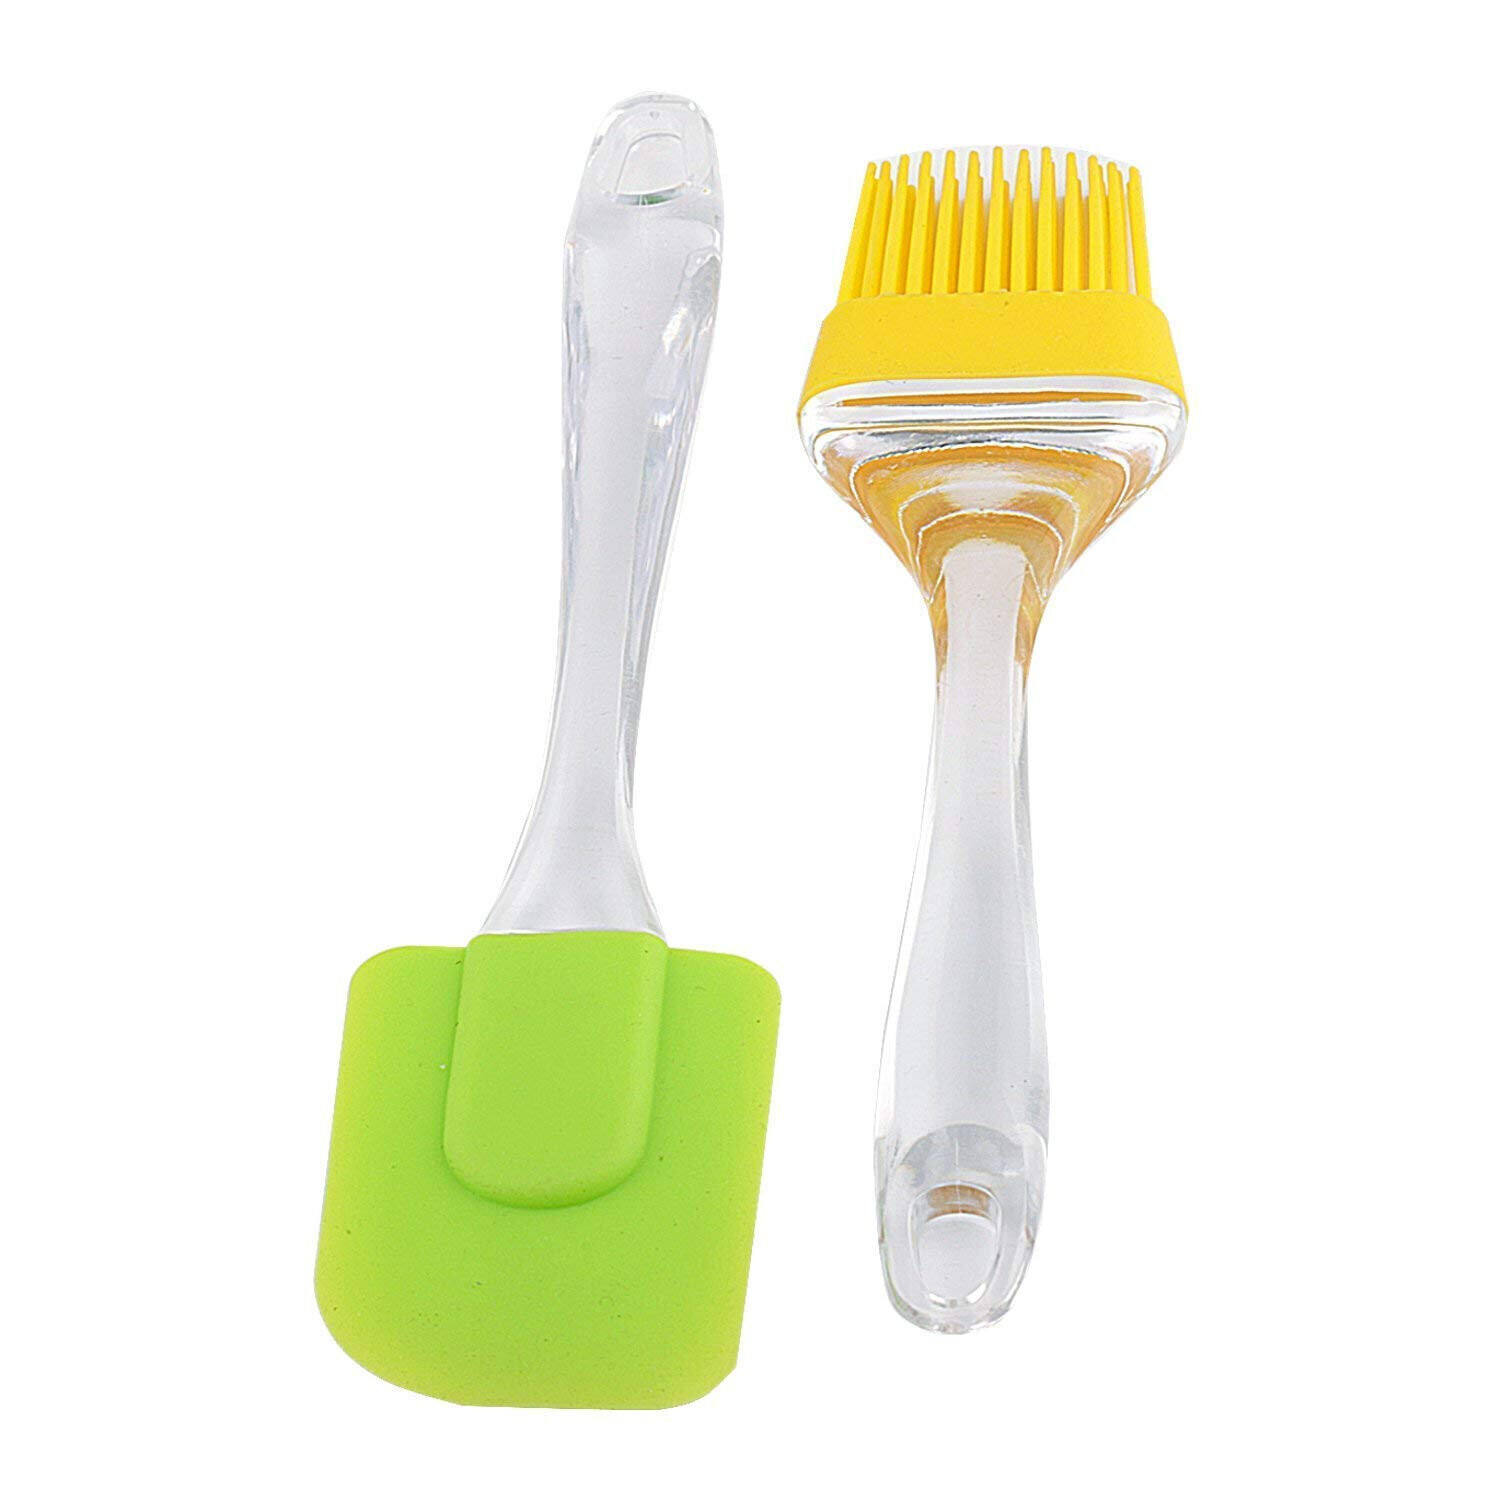 Silicon oil brush and spatula